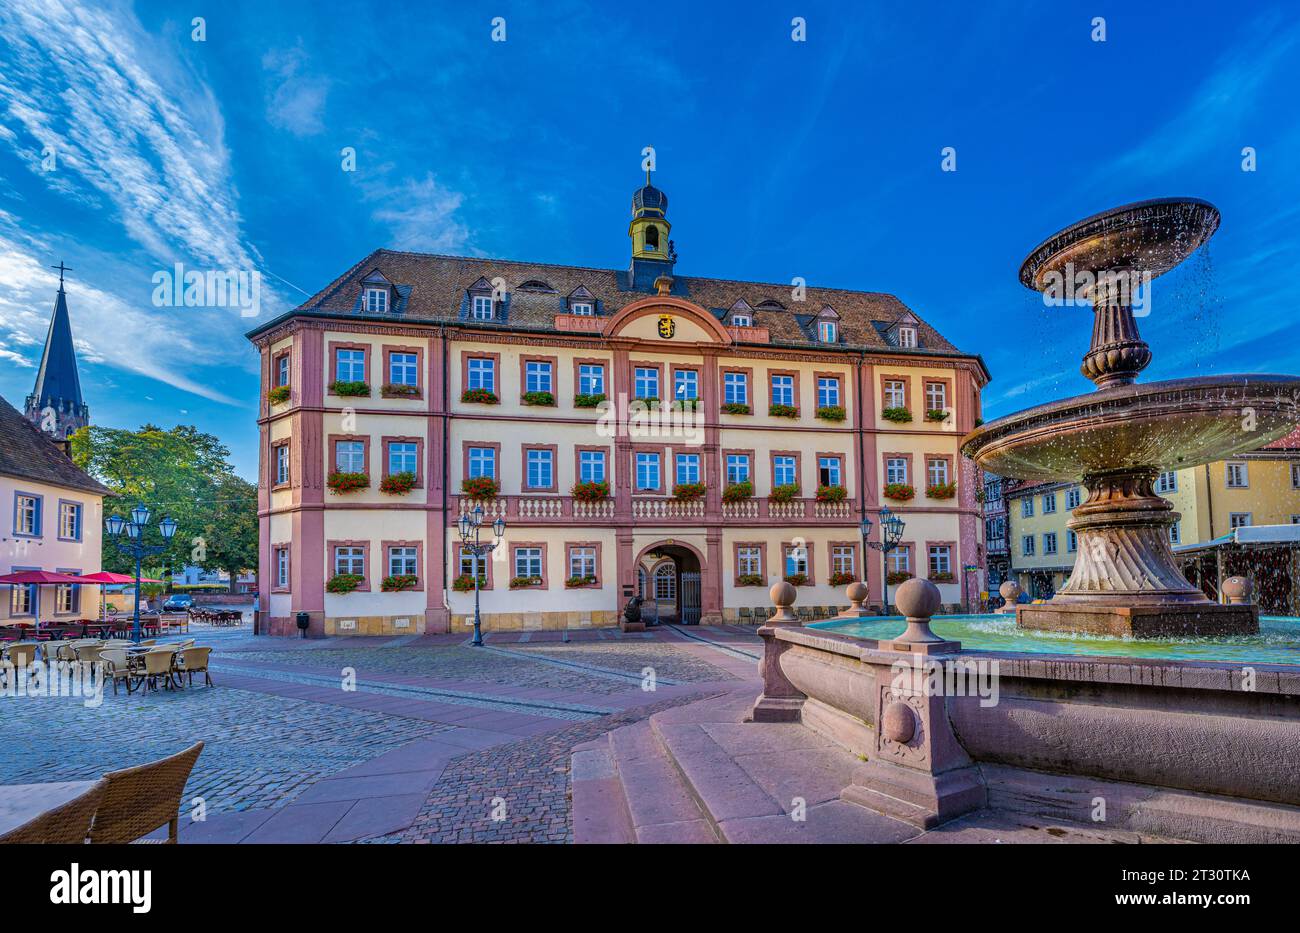 Rathaus, Marktplatz, Neustadt an der Weinstraße, Pfalz, Rheinland-Pfalz, Deutschland, Europa Stockfoto